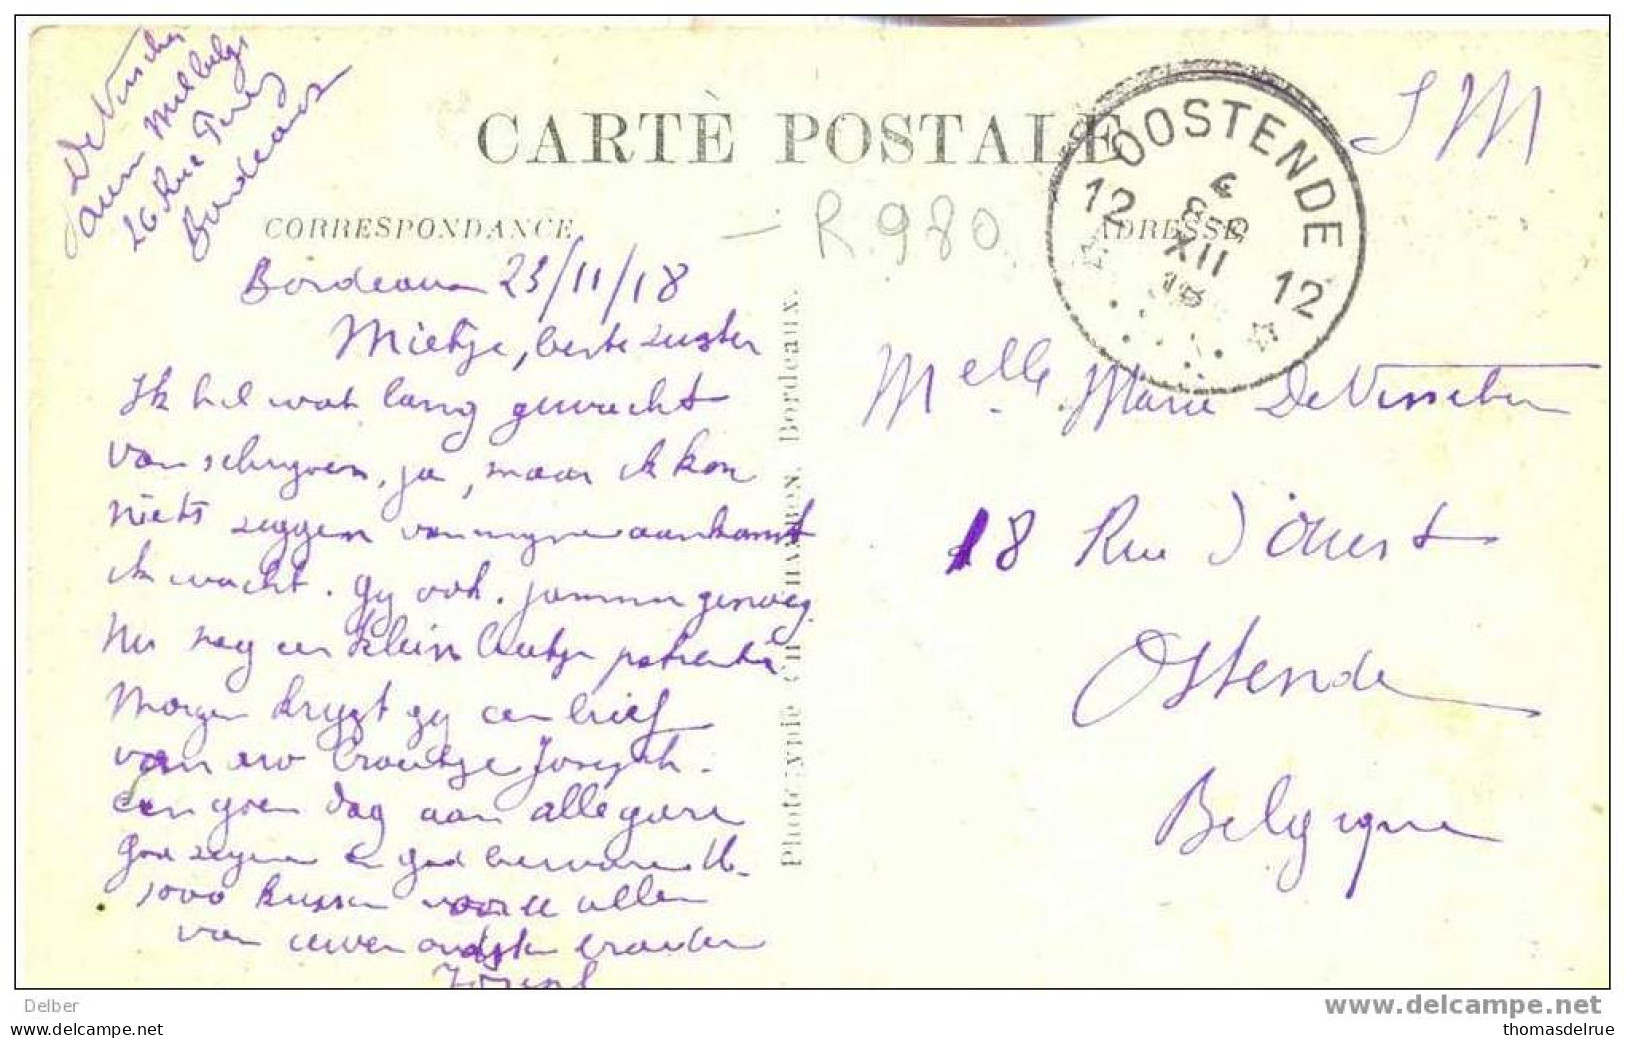 _R980: Franse Prentkaart Verstuurd: S.0M. >> 12* OOSTENDE 12* 4 8-9 XIII 18 (= Postagentschap:noodstempel) - Foruna (1919)